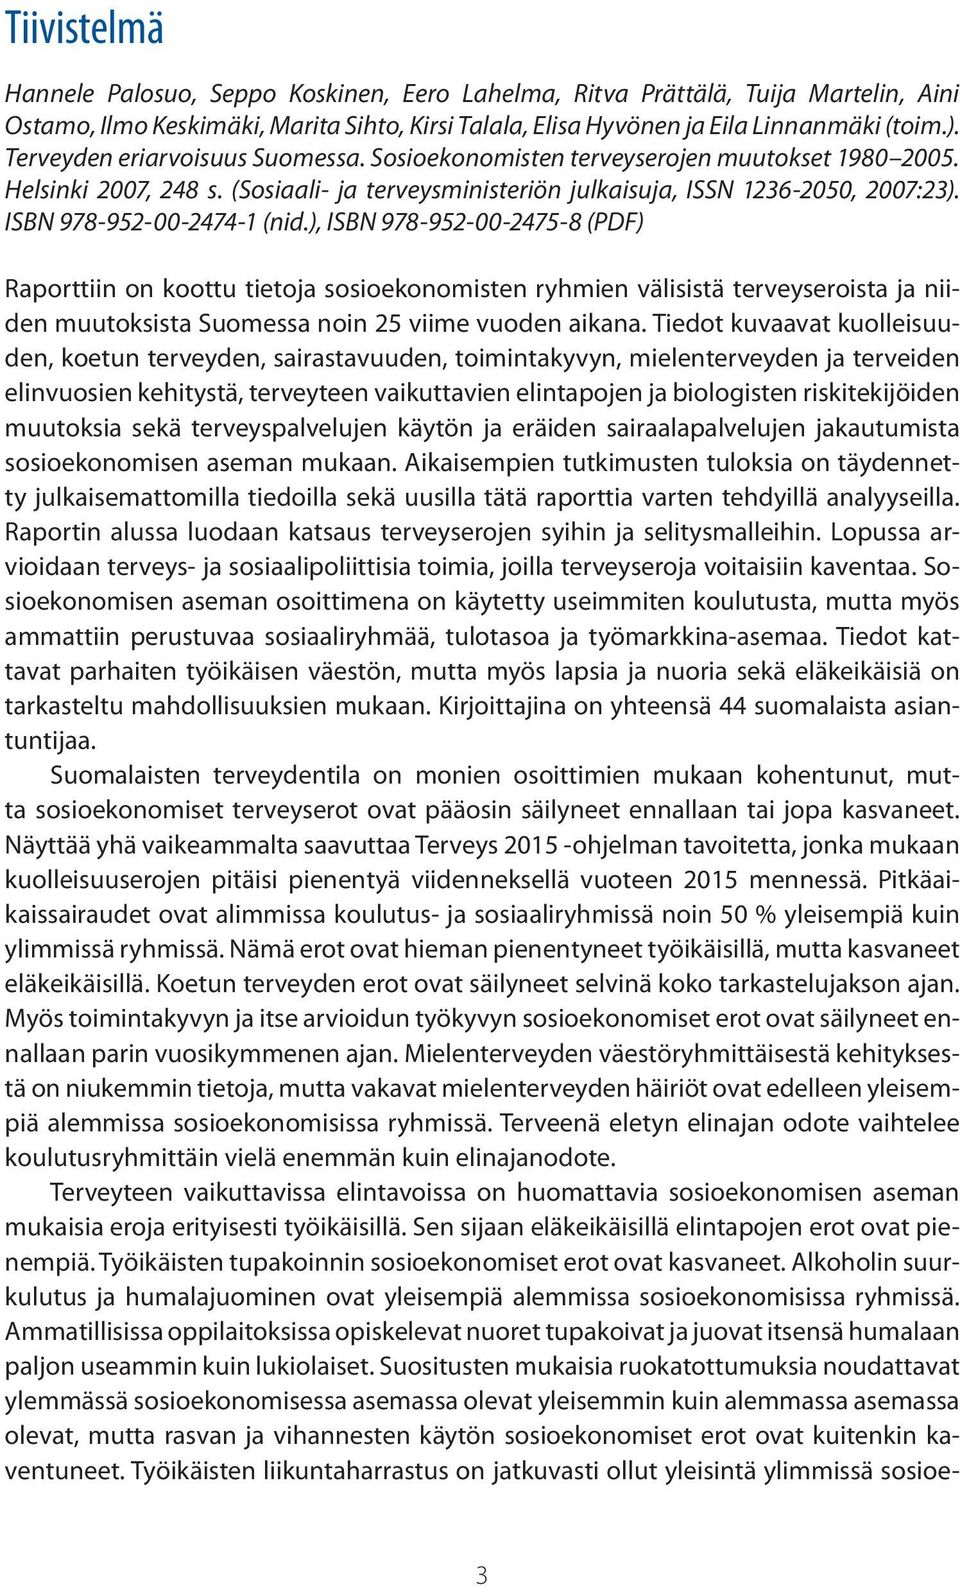 ISBN 978-952-00-2474-1 (nid.), ISBN 978-952-00-2475-8 (PDF) Raporttiin on koottu tietoja sosioekonomisten ryhmien välisistä terveyseroista ja niiden muutoksista Suomessa noin 25 viime vuoden aikana.